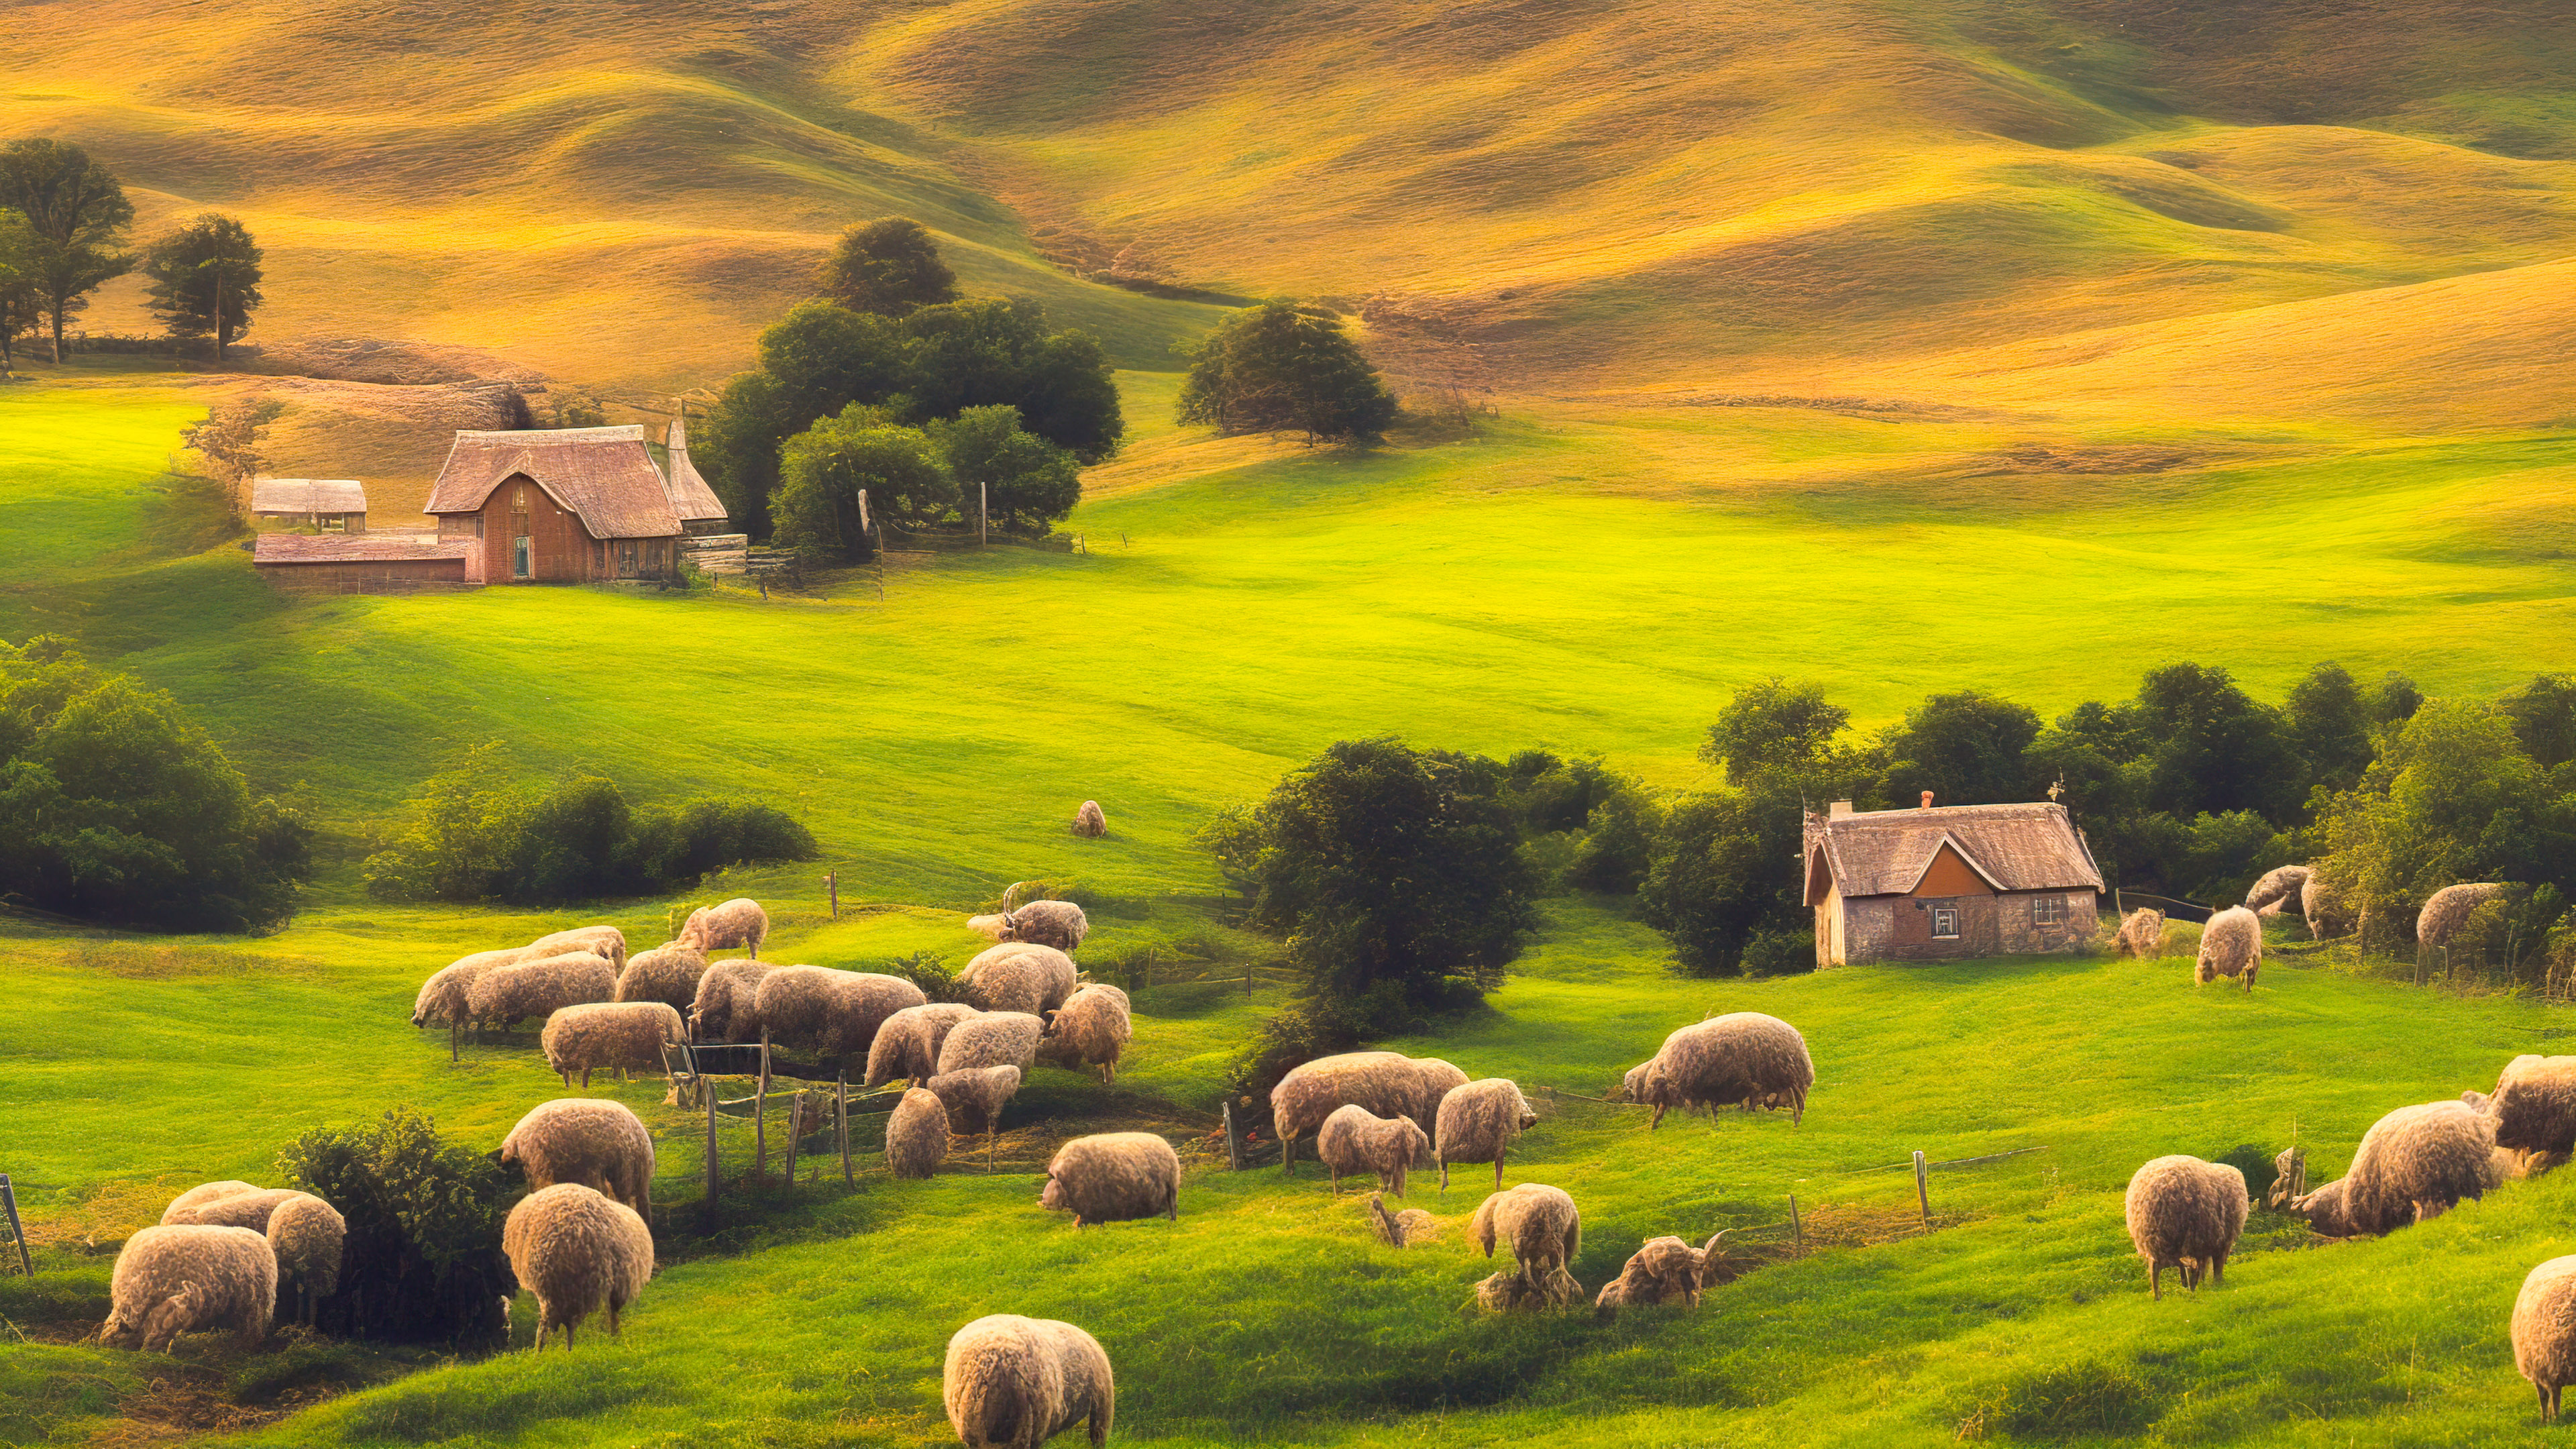 Téléchargez la sérénité avec notre fond d'écran de paysage pour ordinateur de bureau en 4K, capturant une paisible maison de campagne nichée parmi des collines ondulantes, entourée de moutons qui paissent.